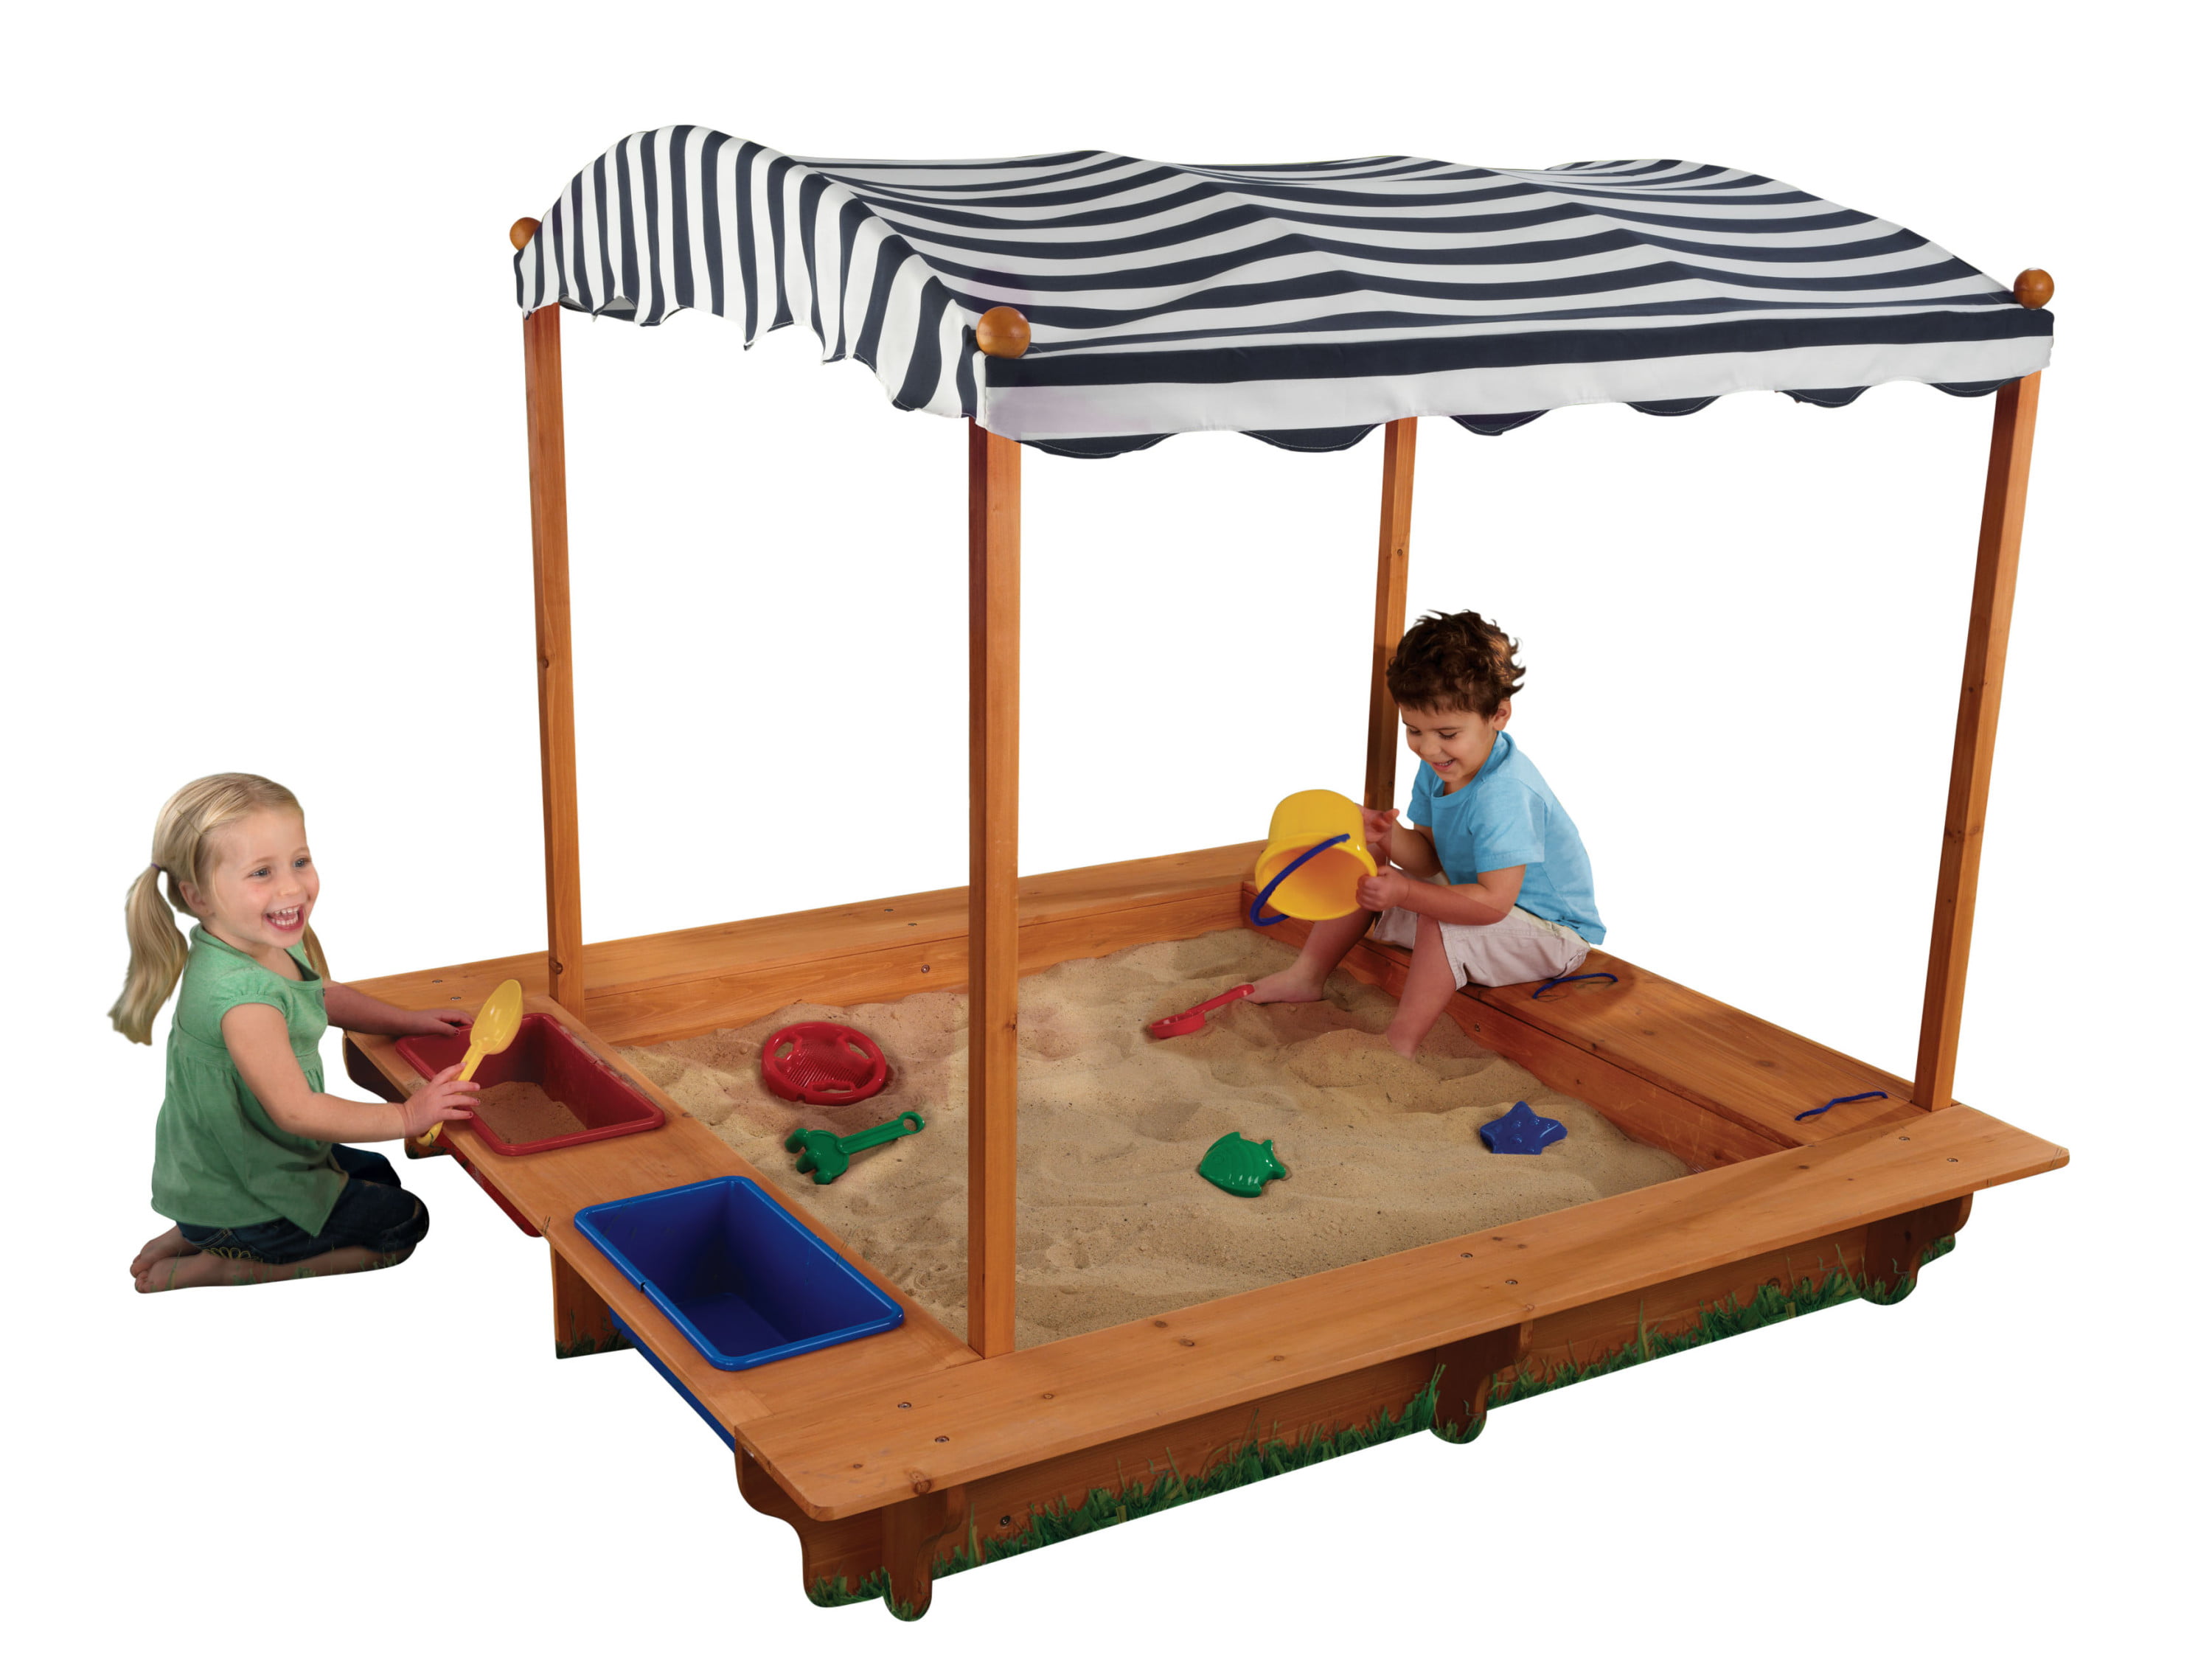 Wooden Sandbox Kids Outdoor Playset With Canopy Children Outdoor Beach Backyard